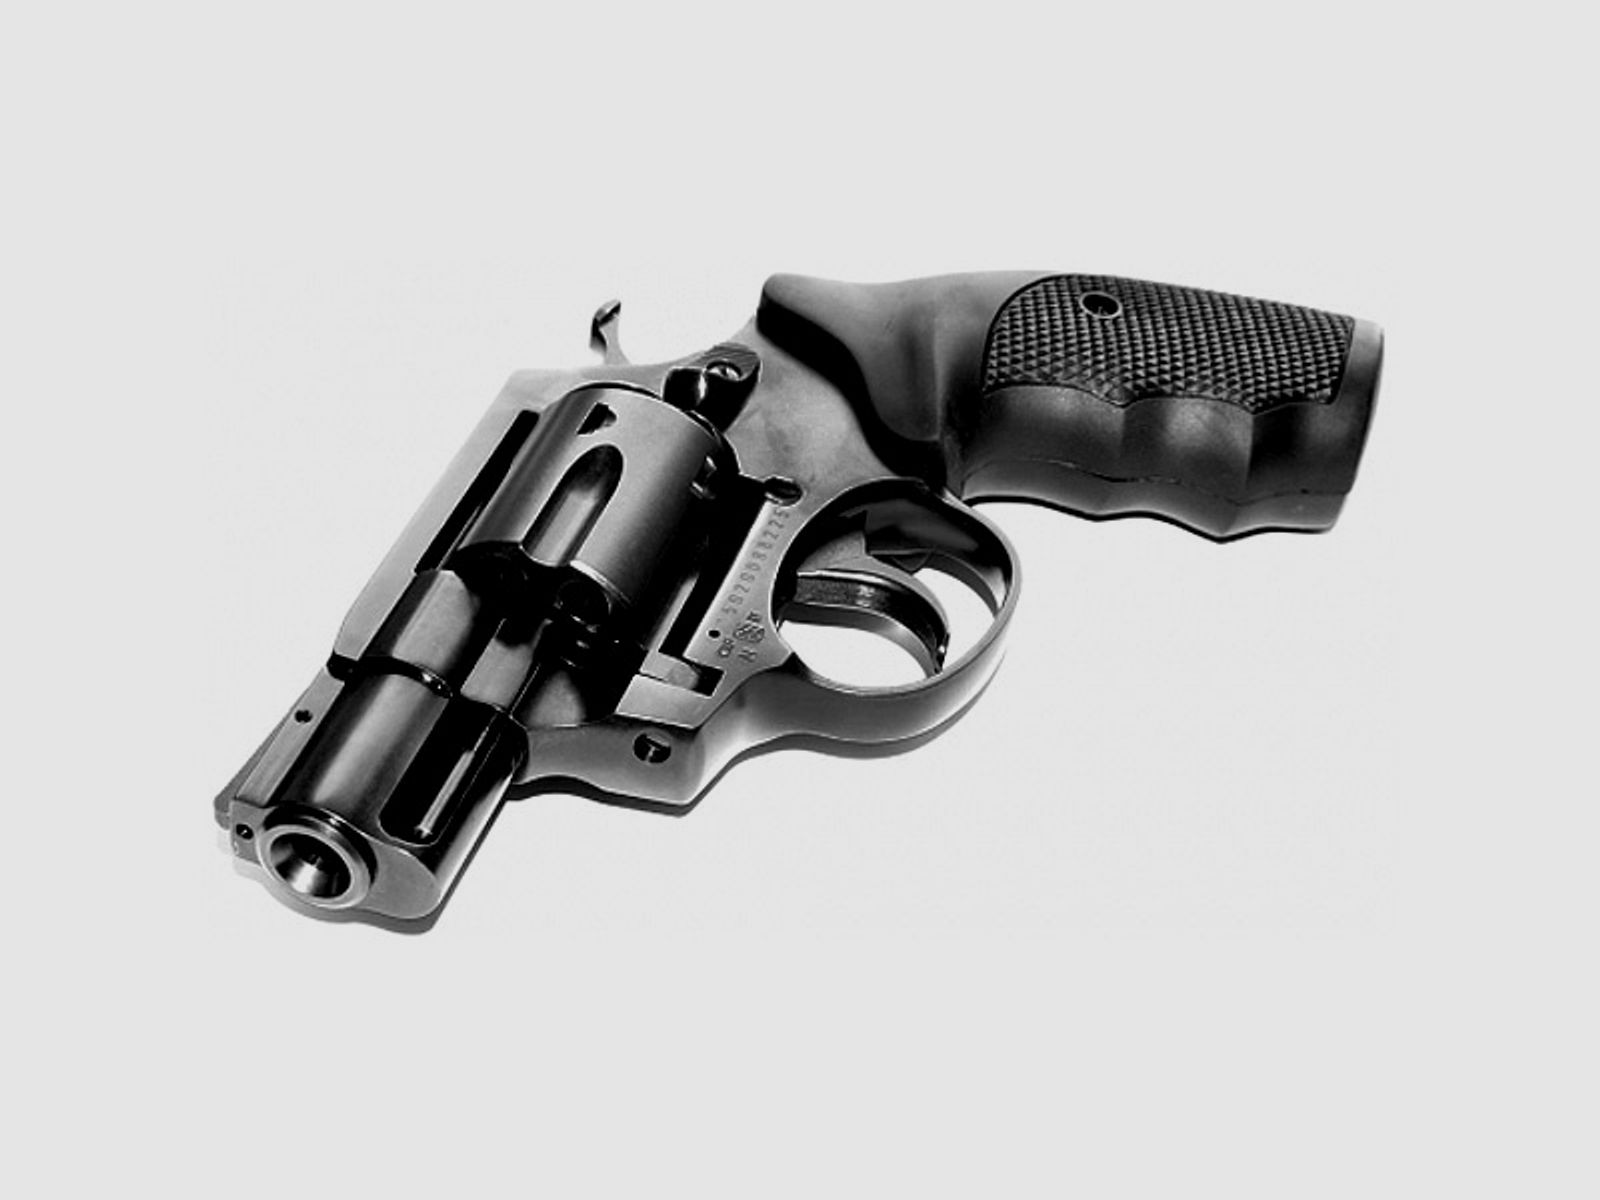 Schreckschuss Revolver Steel Cop 2 Zoll Vollstahl schwarz mit Laufgewinde Kaliber 9 mm R.K. (P18)